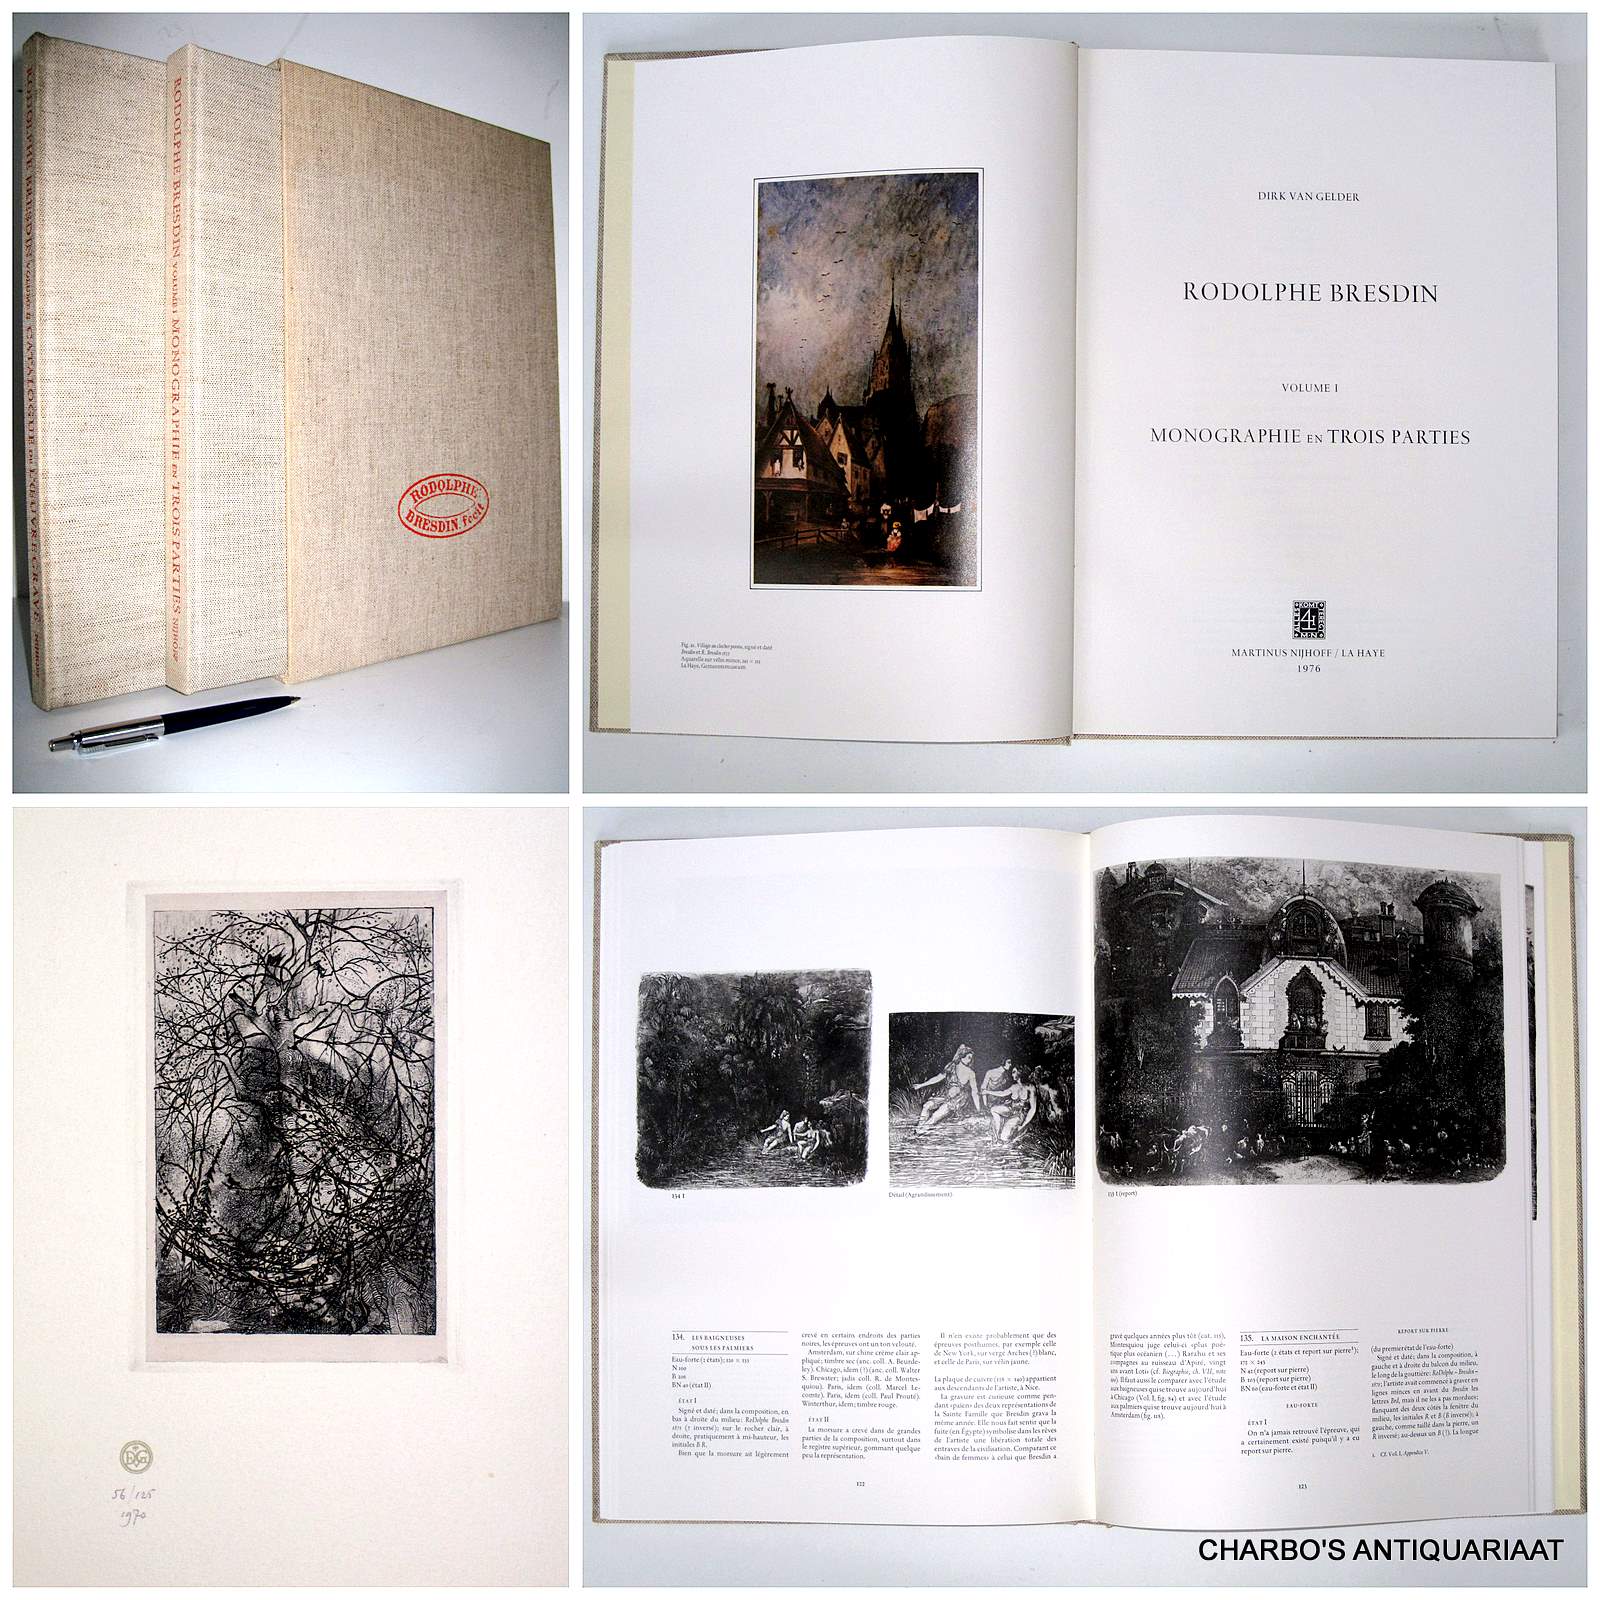 GELDER, DIRK VAN, -  Rodolphe Bresdin. Volume I: Monographie en trois parties; Volume II: Catalogue raisonn de l'oeuvre grav. (2 vol. set, incl. etching in vol. II).